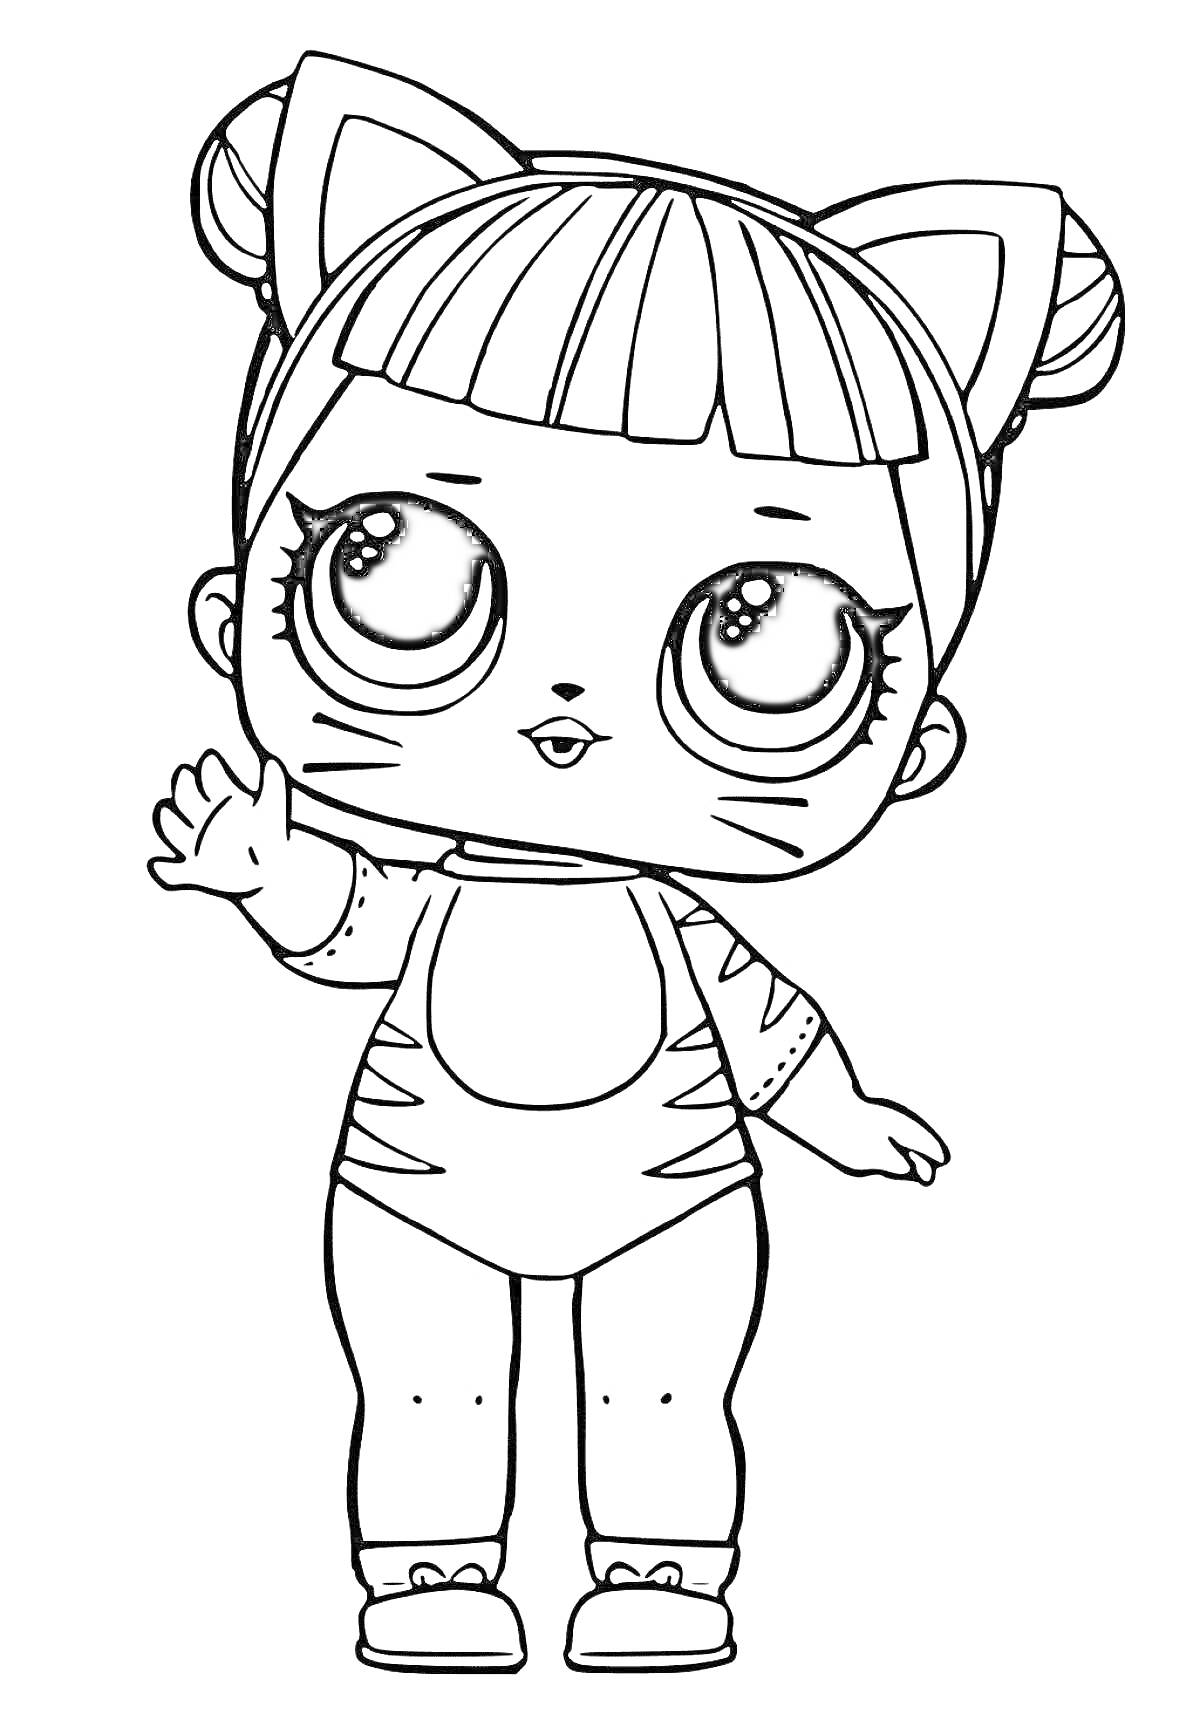 Раскраска Кукла Лол с ушками кошки, полосками на лице и руке, поднимающая руку вверх, в костюме с полосками на рукавах и ногах